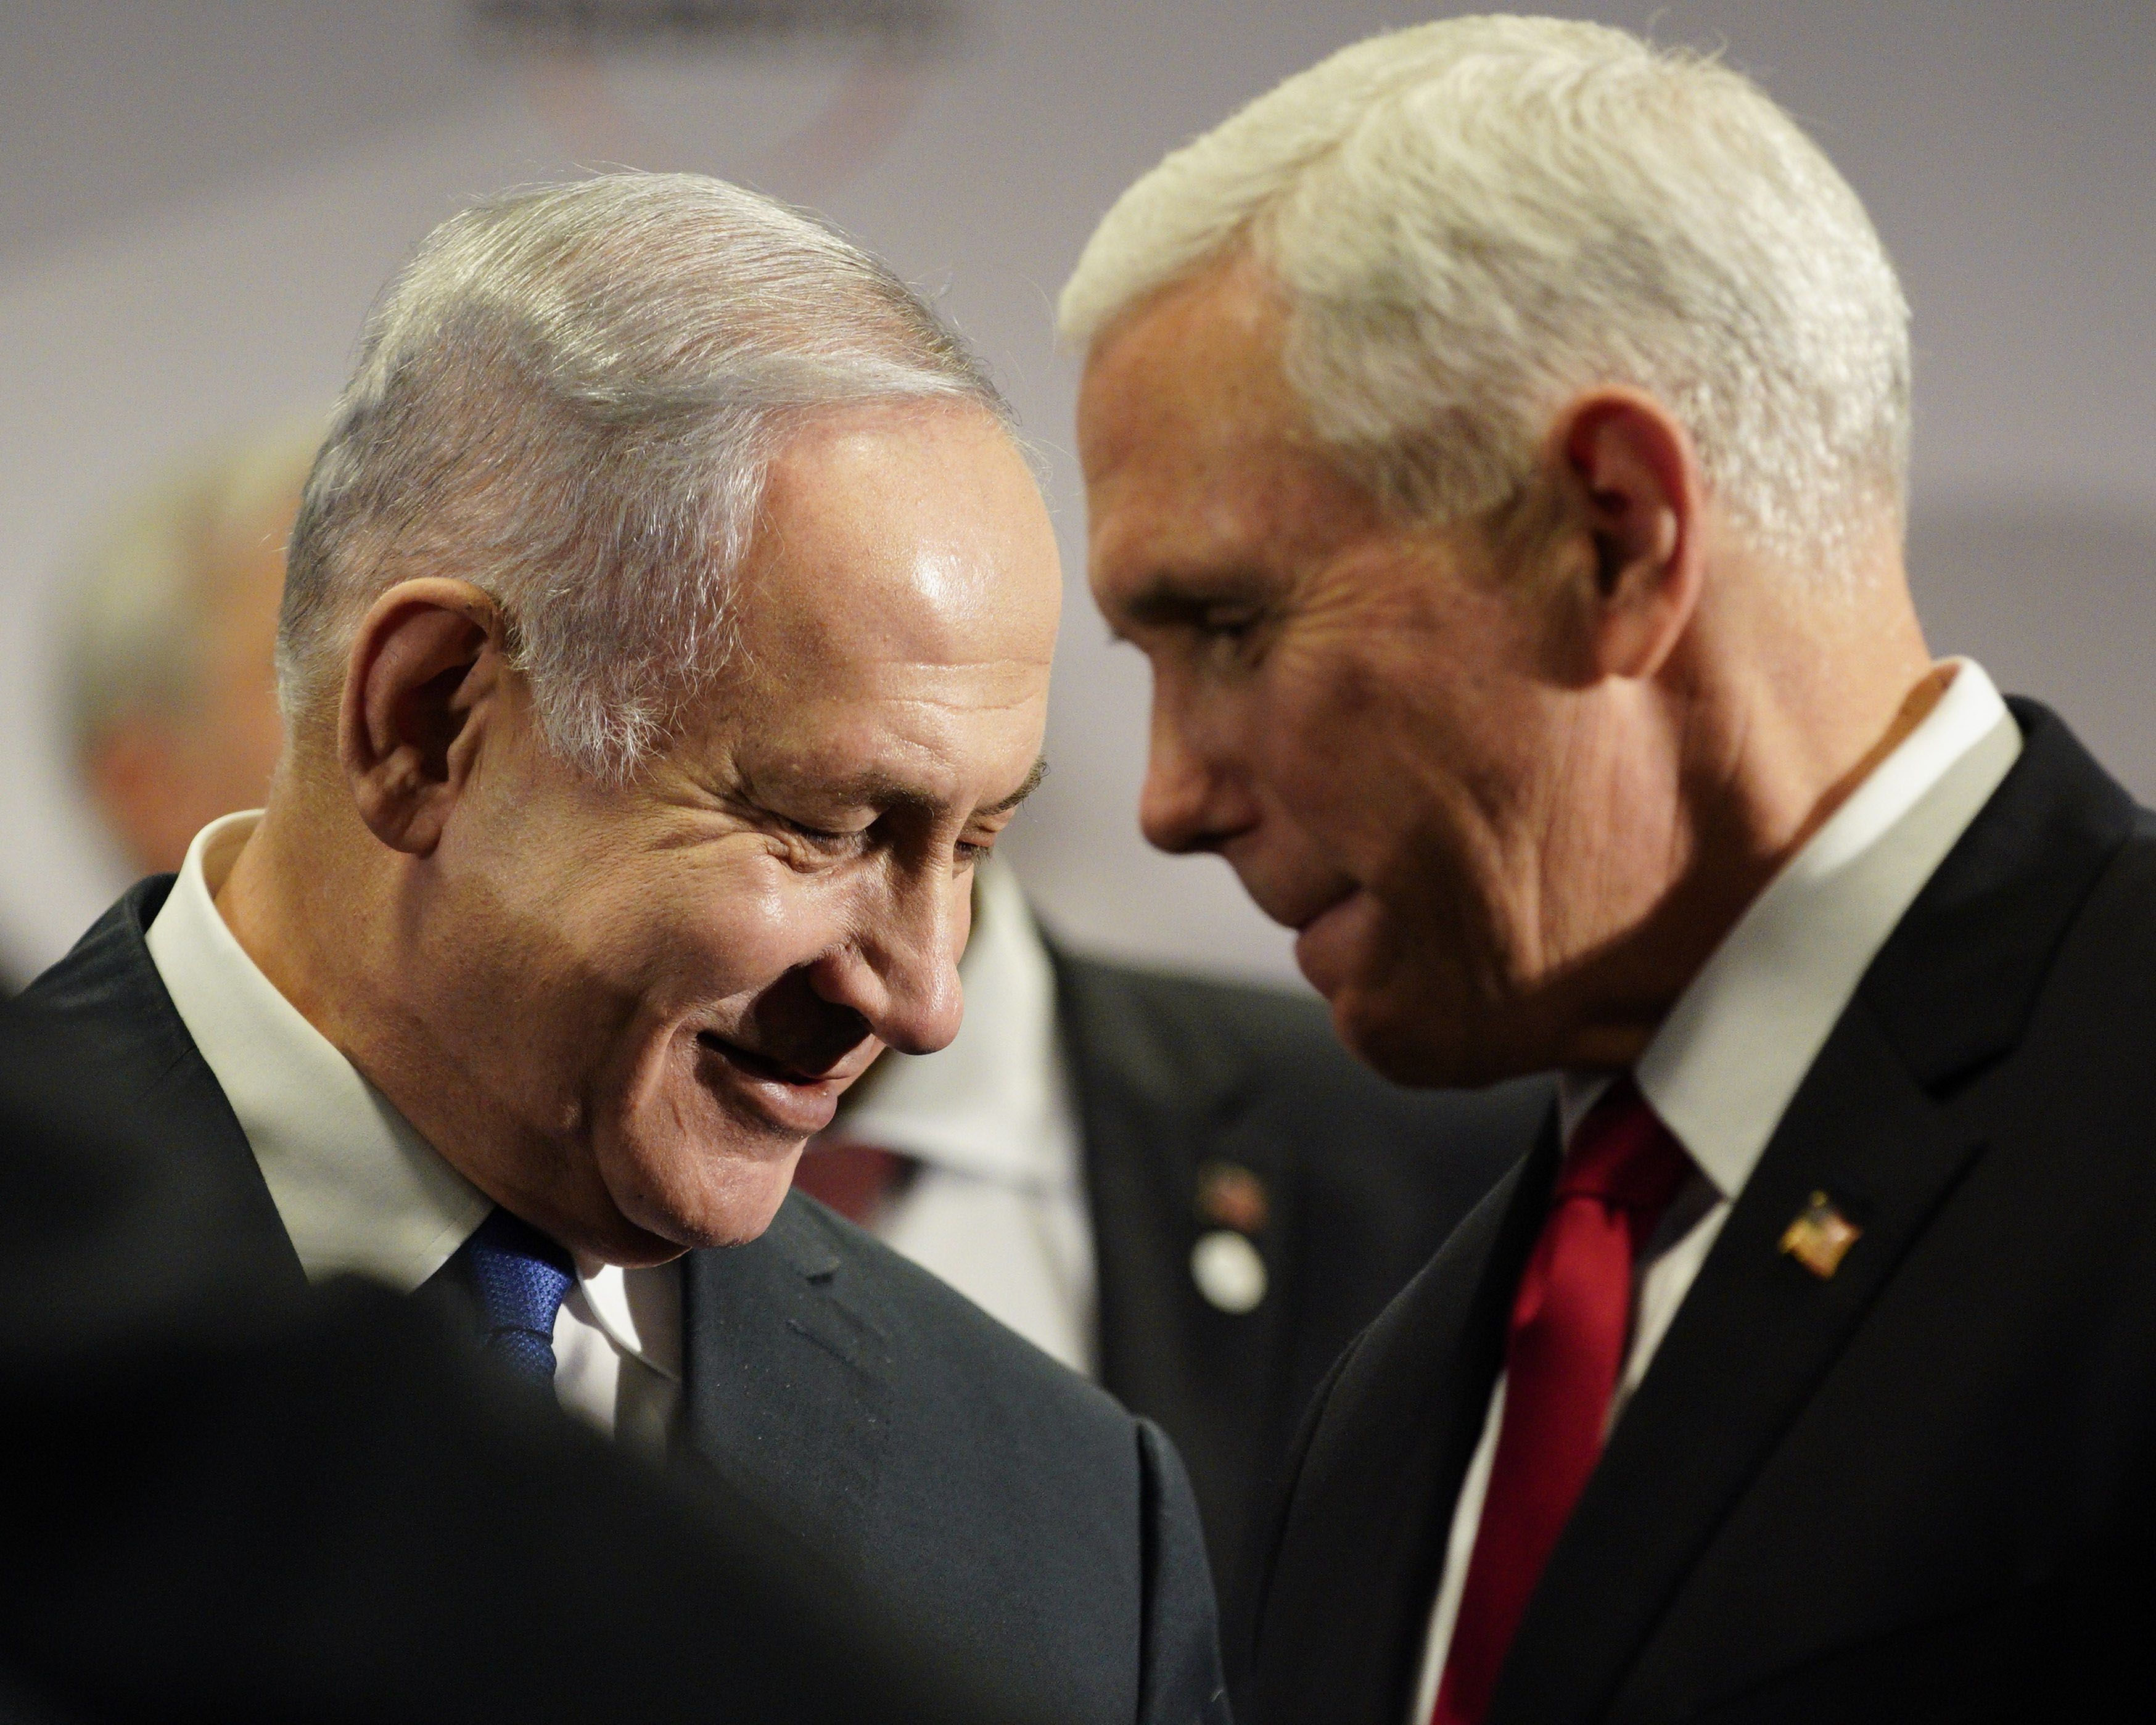 Bibi Netanyahu and Mike Pence